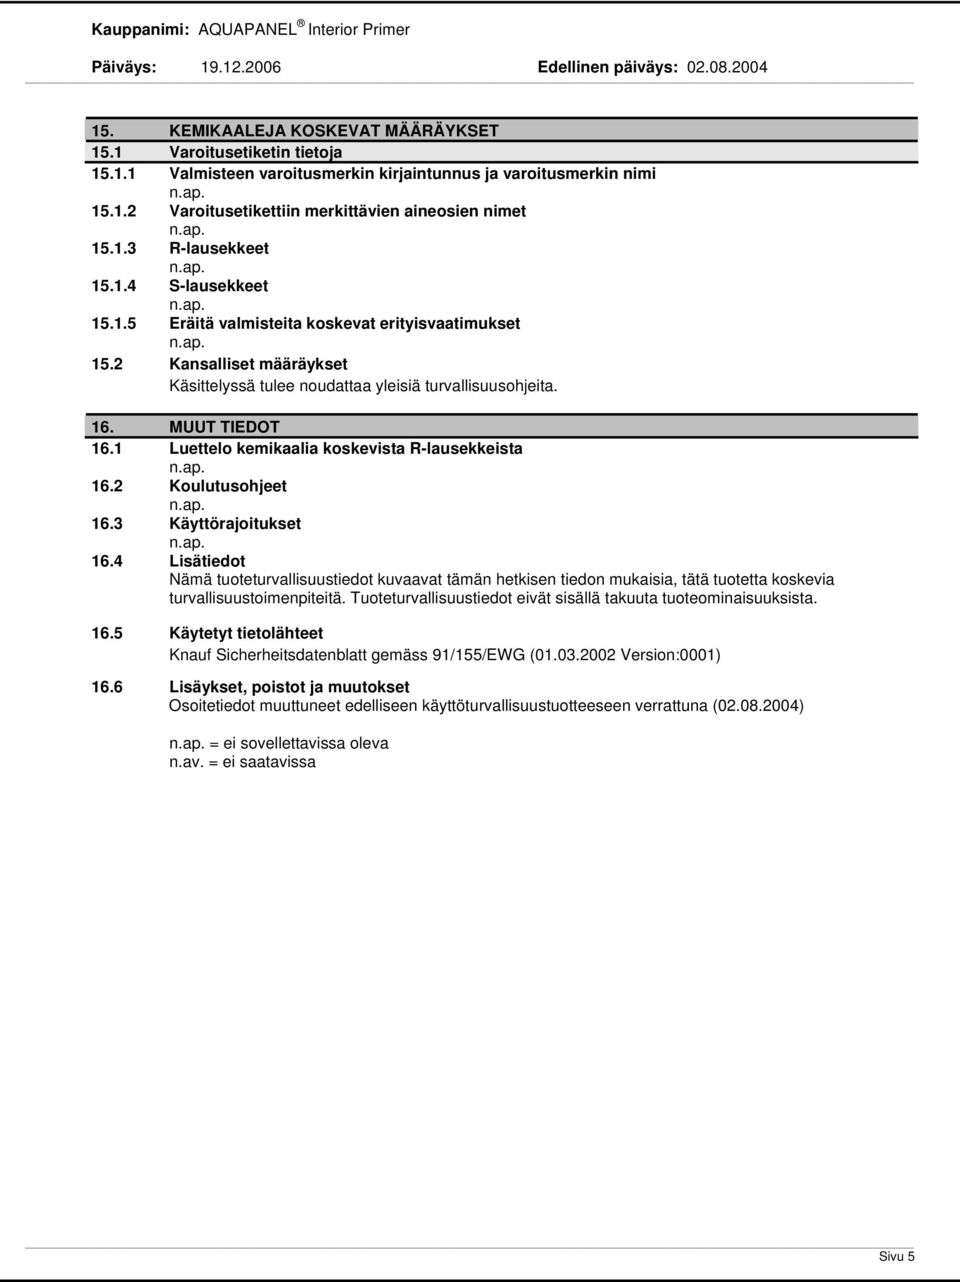 1 Luettelo kemikaalia koskevista Rlausekkeista 16.2 Koulutusohjeet 16.3 Käyttörajoitukset 16.